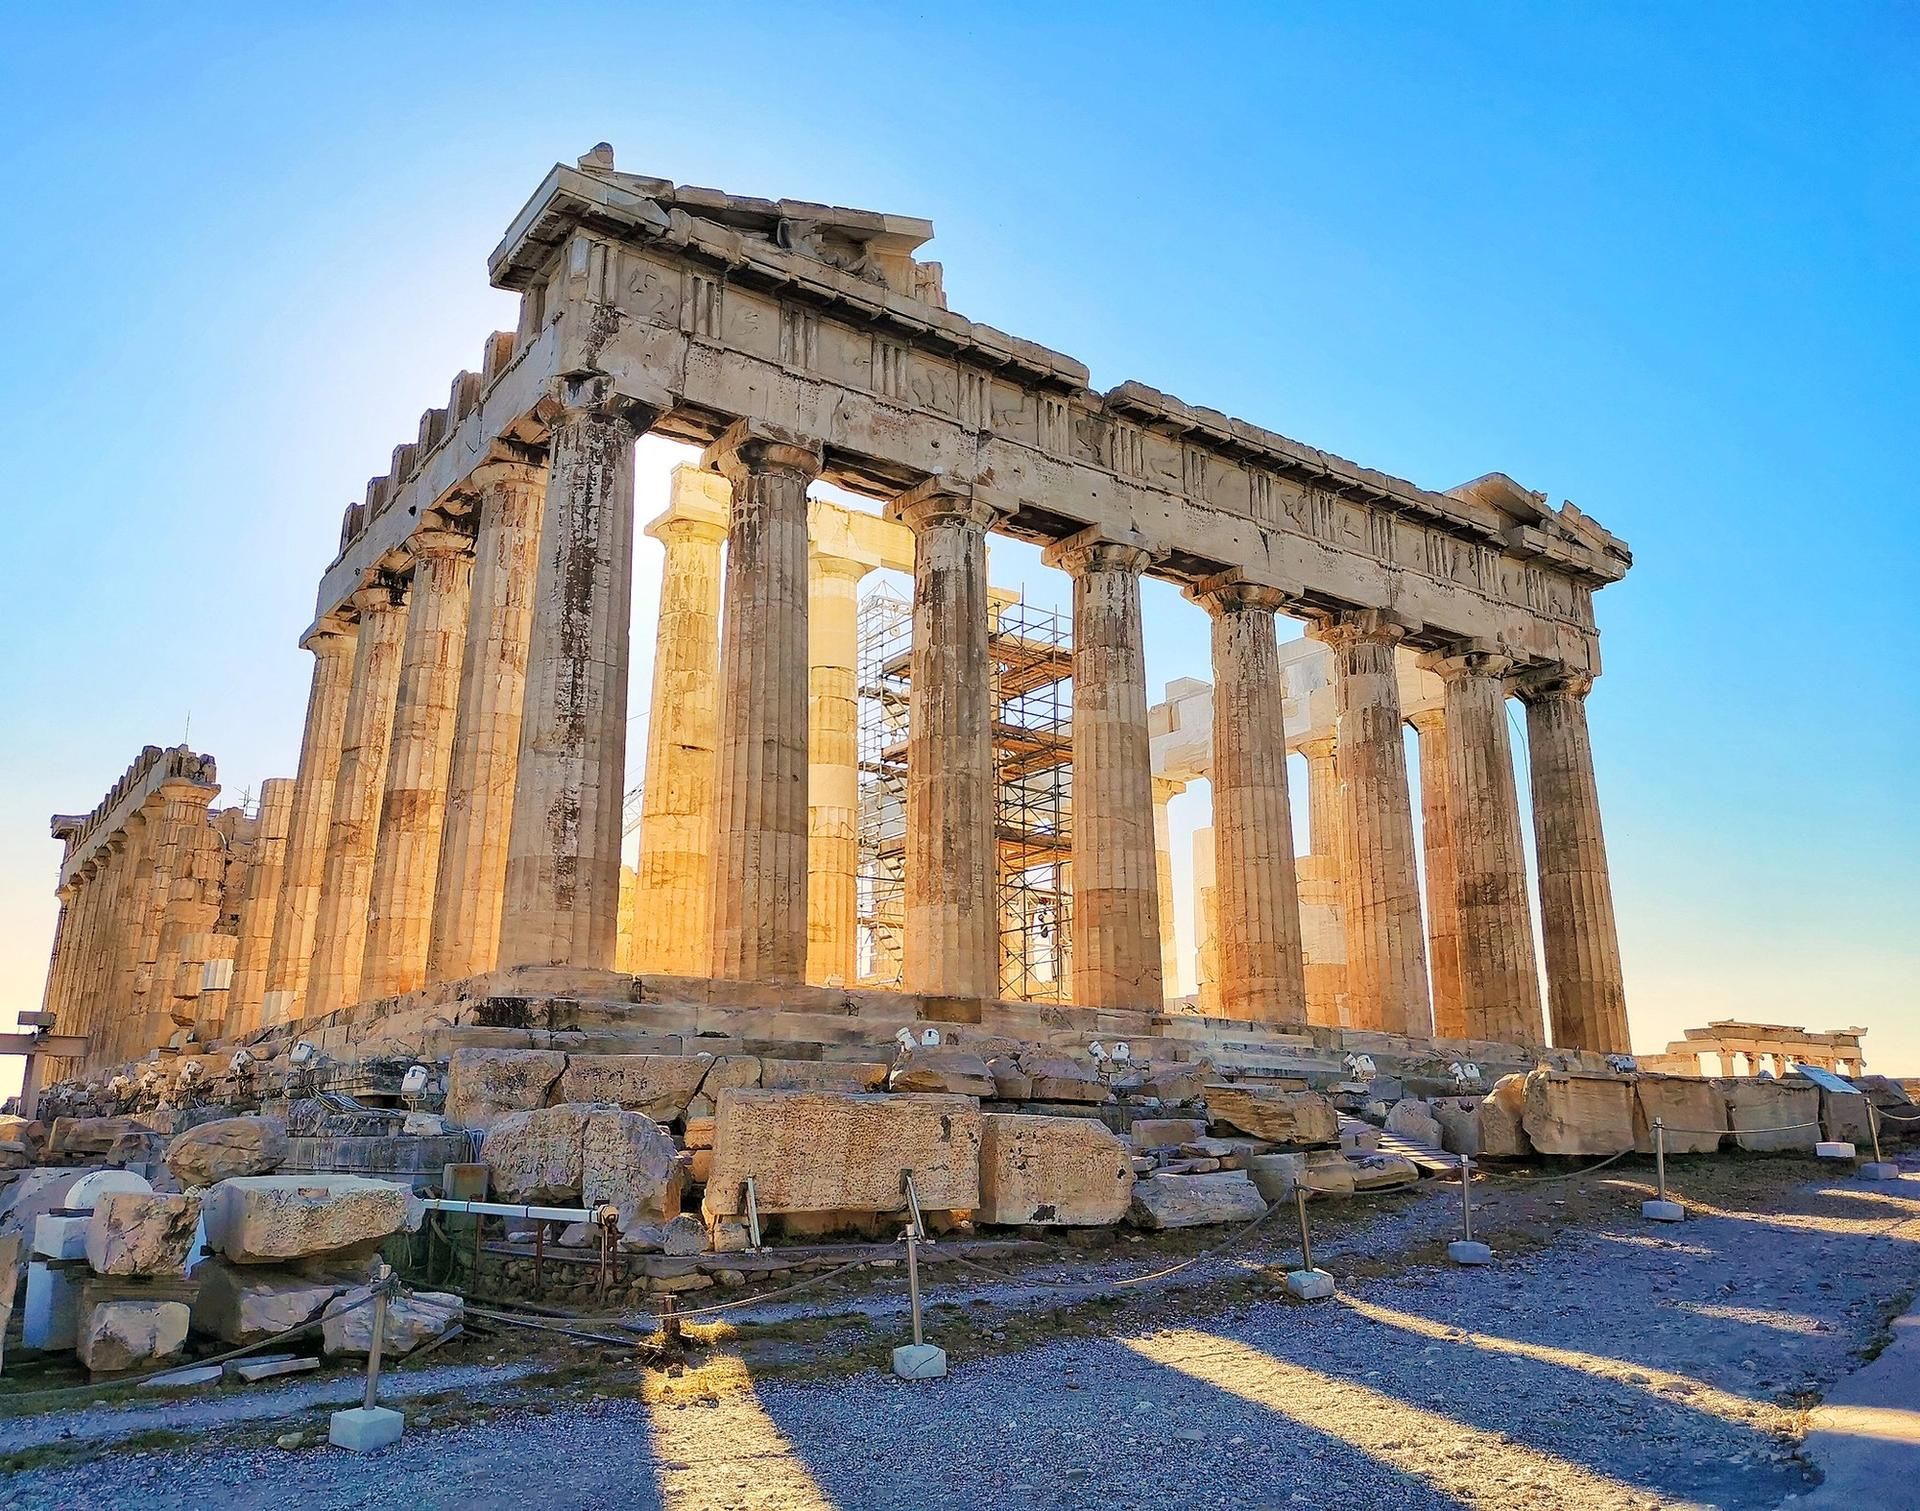 חלקים הוסרו ממקדש הפרתנון באקרופוליס באתונה והם שוכנים כעת במוזיאונים בינלאומיים

צילום: Margareths1